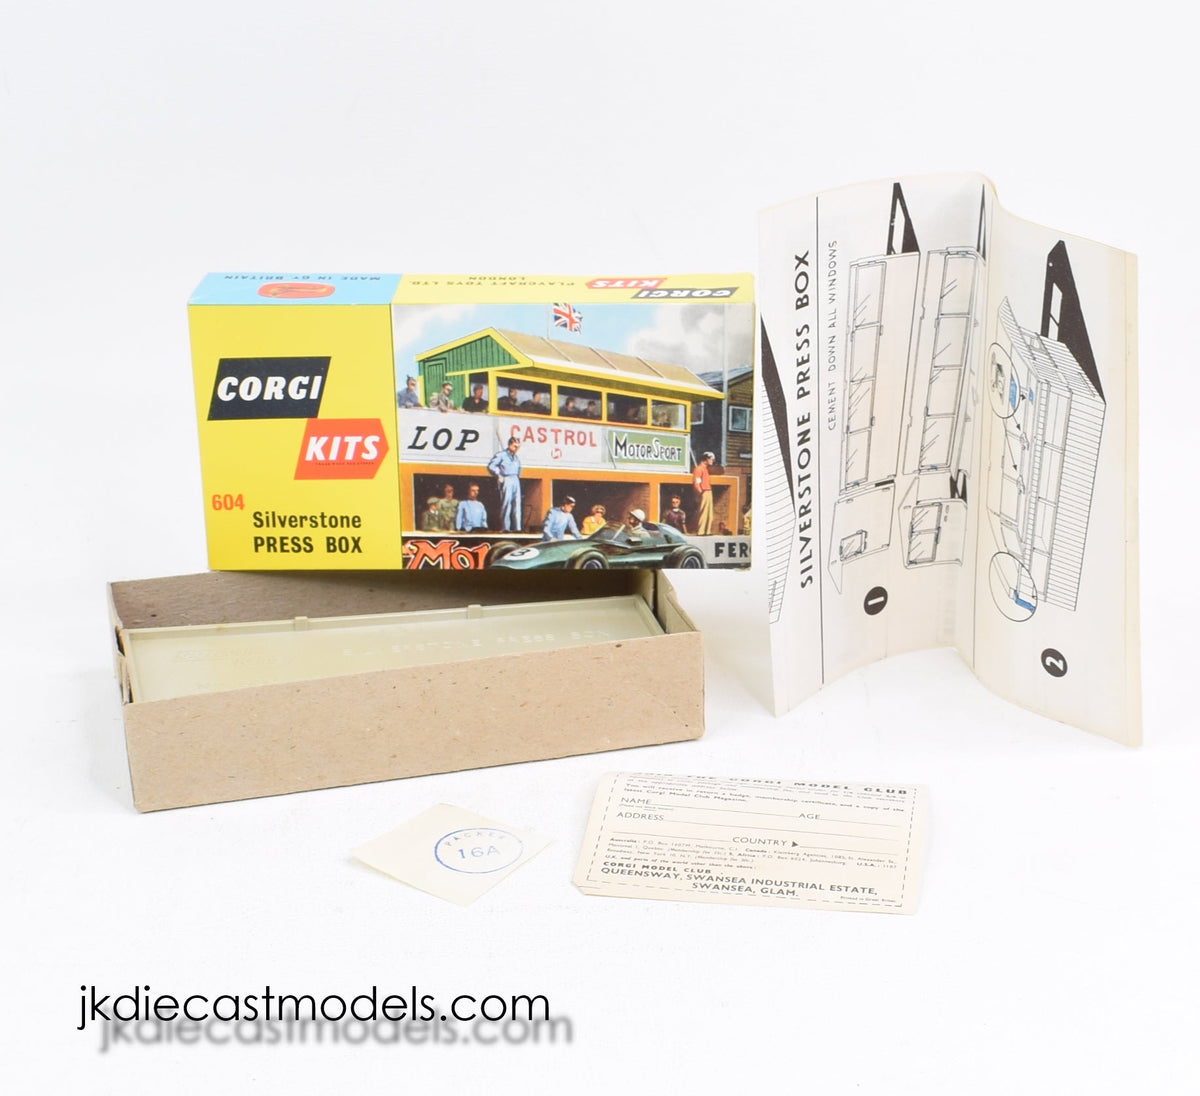 Corgi toys 604 Silverstone Press Box Virtually Mint/Boxed (MW)